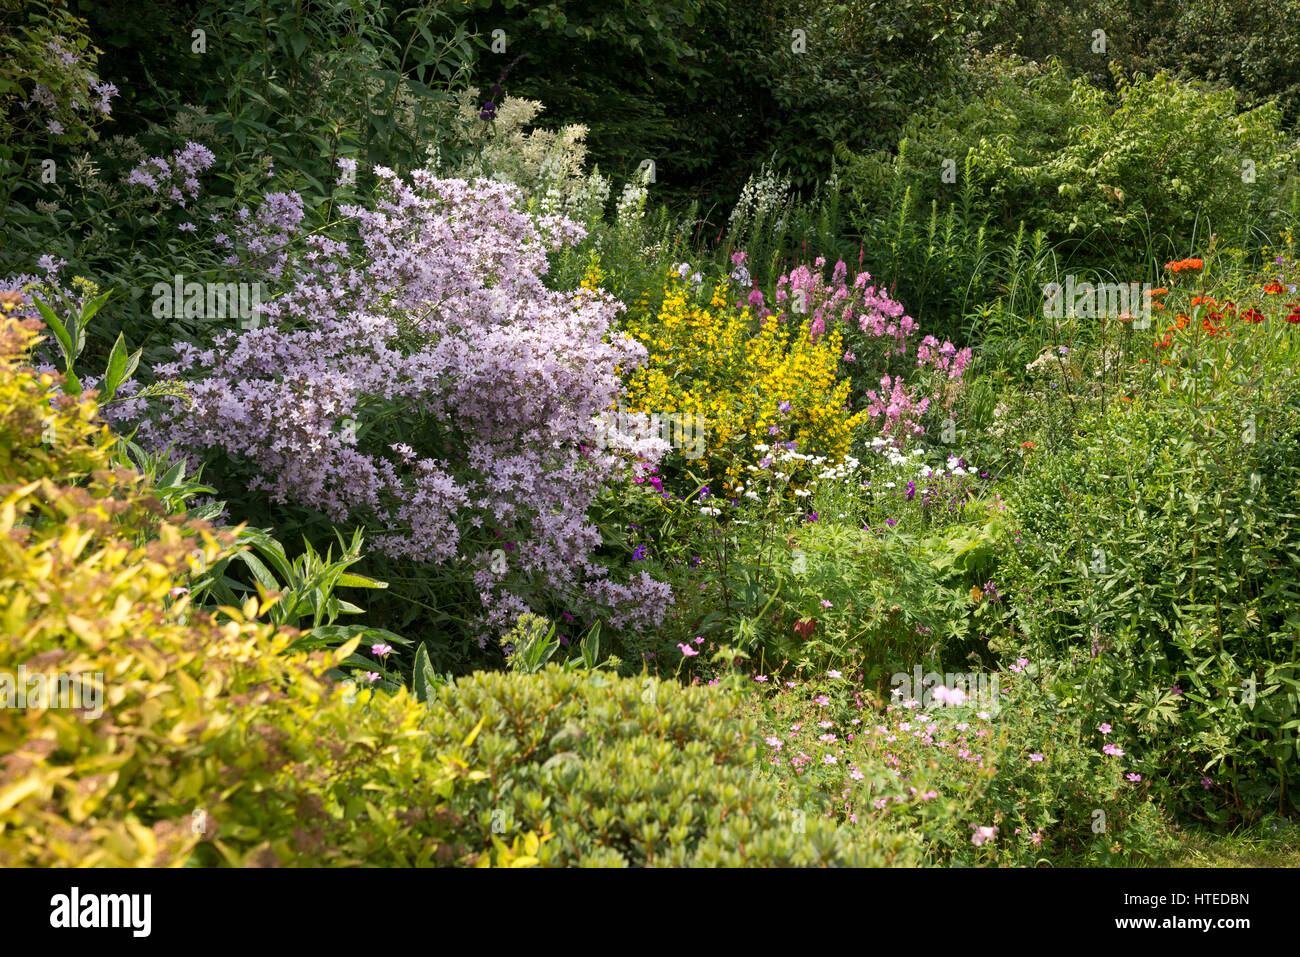 Bunte Blumenbeete im Garten Landhausstil. Gemischte Pflanzung von Sträuchern und Stauden in vollem Wachstum, Mitte Juli. Stockfoto